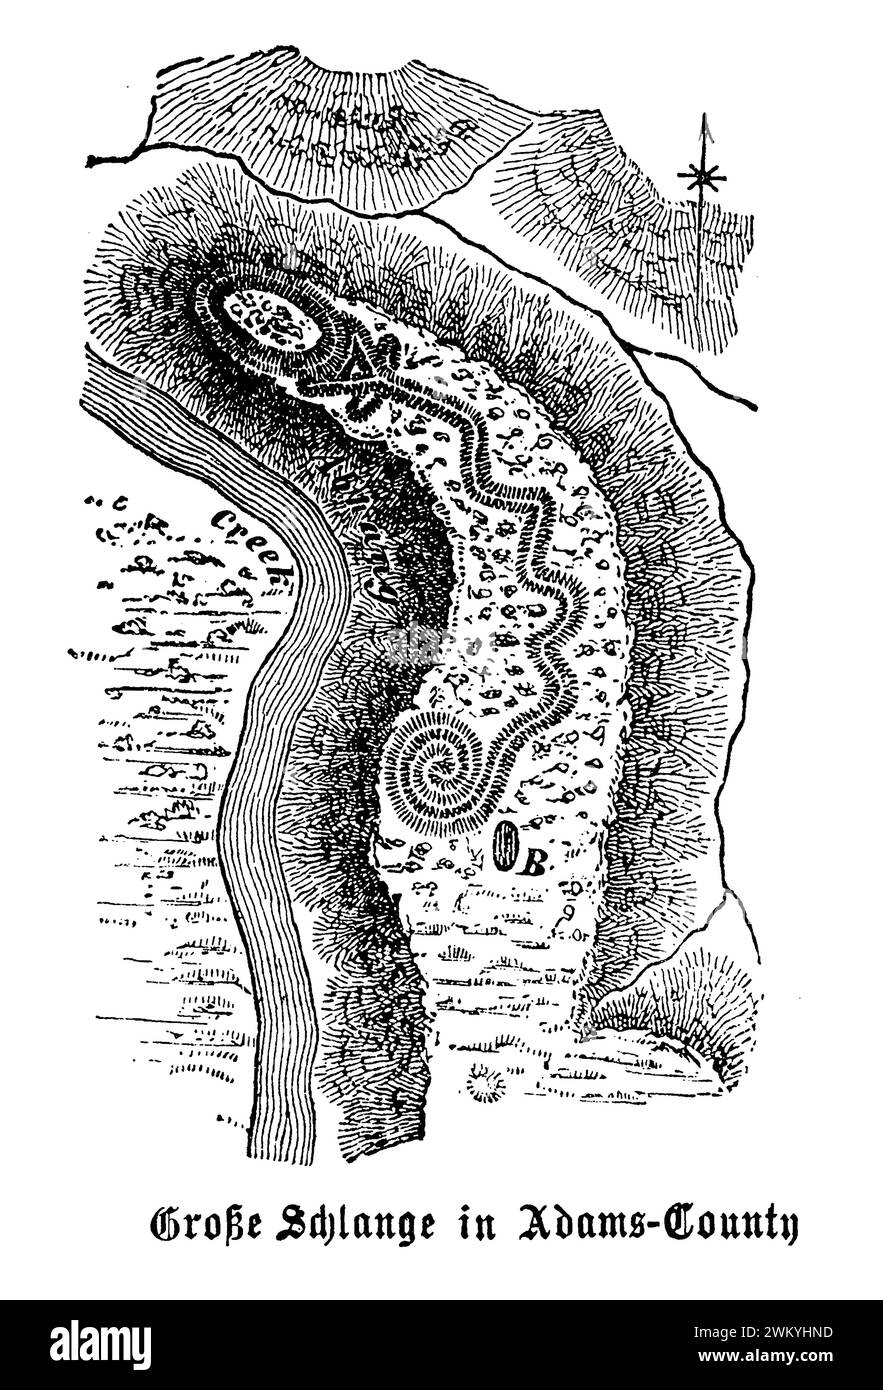 E Grand Serpent Mound dans le comté d'Adams, près de Peebles, Ohio, est l'un des monticules effigies préhistoriques les plus remarquables et les plus mystérieux d'Amérique du Nord. Cet ancien terrassement, en forme de serpent avec une queue enroulée et une bouche ouverte, s'étend sur plus de 1 348 pieds de longueur et varie en hauteur de 1 à 3 pieds. On pense qu'il a été construit par les peuples indigènes de la culture Adena vers 1000 av. J.-C. à 300 EC, bien que des études ultérieures suggèrent que la culture ancienne du fort (1000-1650 EC) aurait pu être responsable de sa création ou de sa modification Banque D'Images